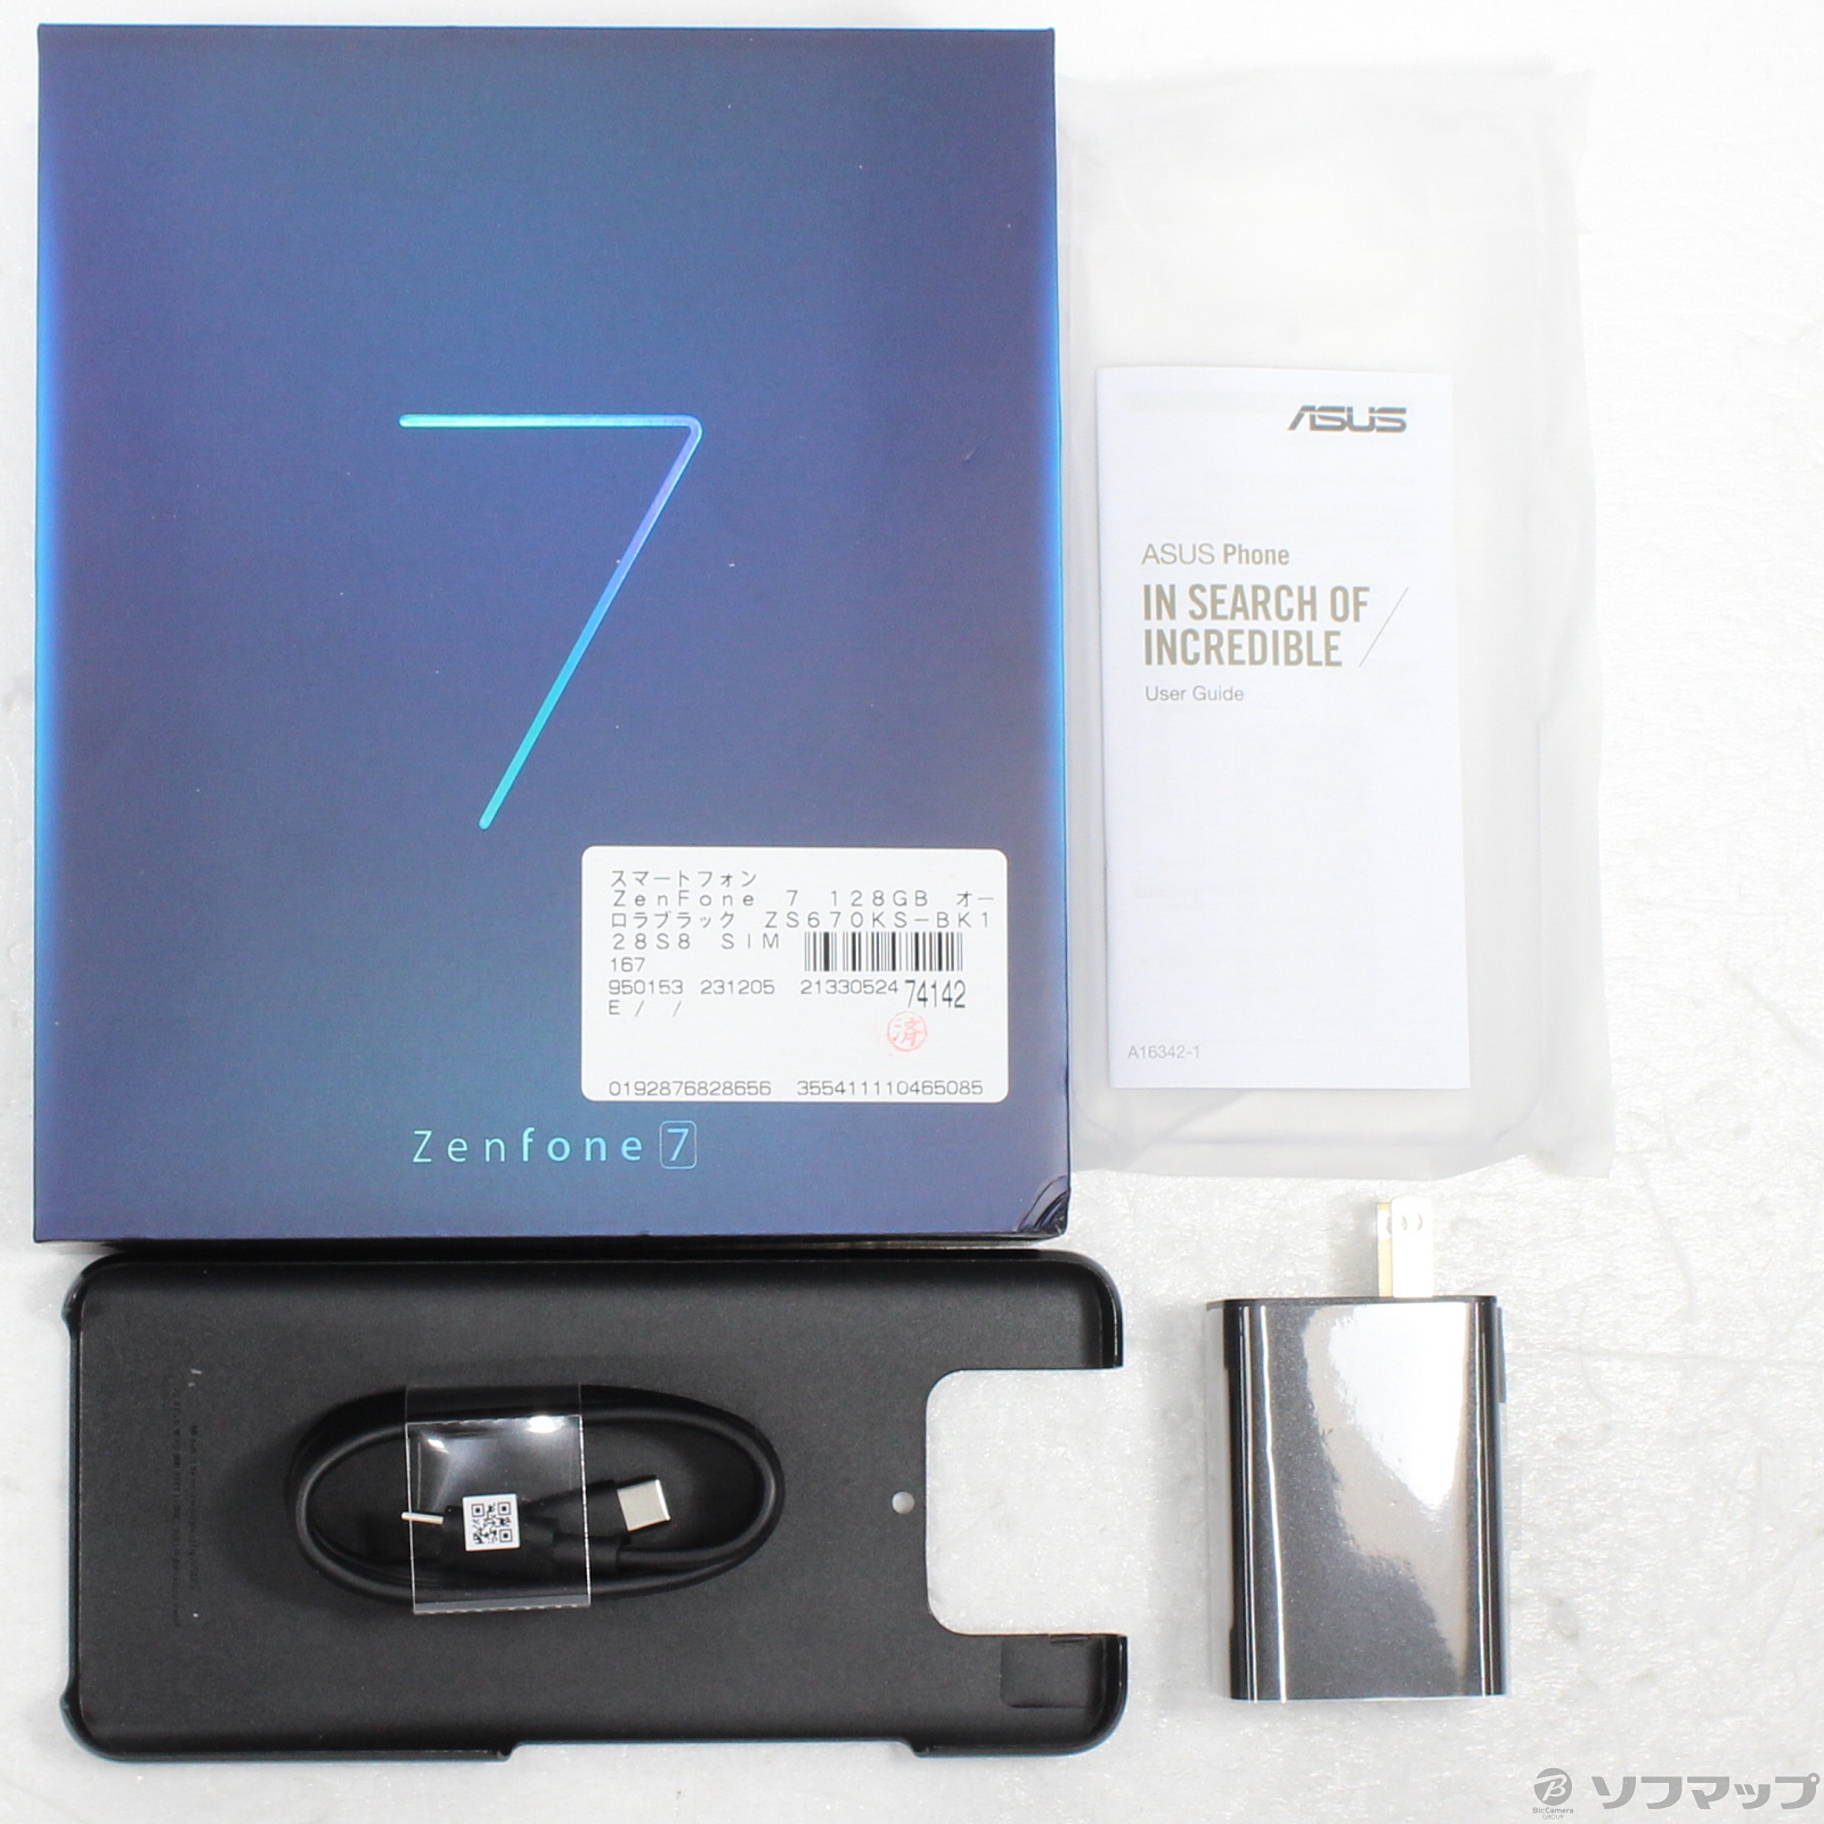 国産超激安ZenFone 7 オーロラブラック 128 GB SIMフリー スマートフォン本体